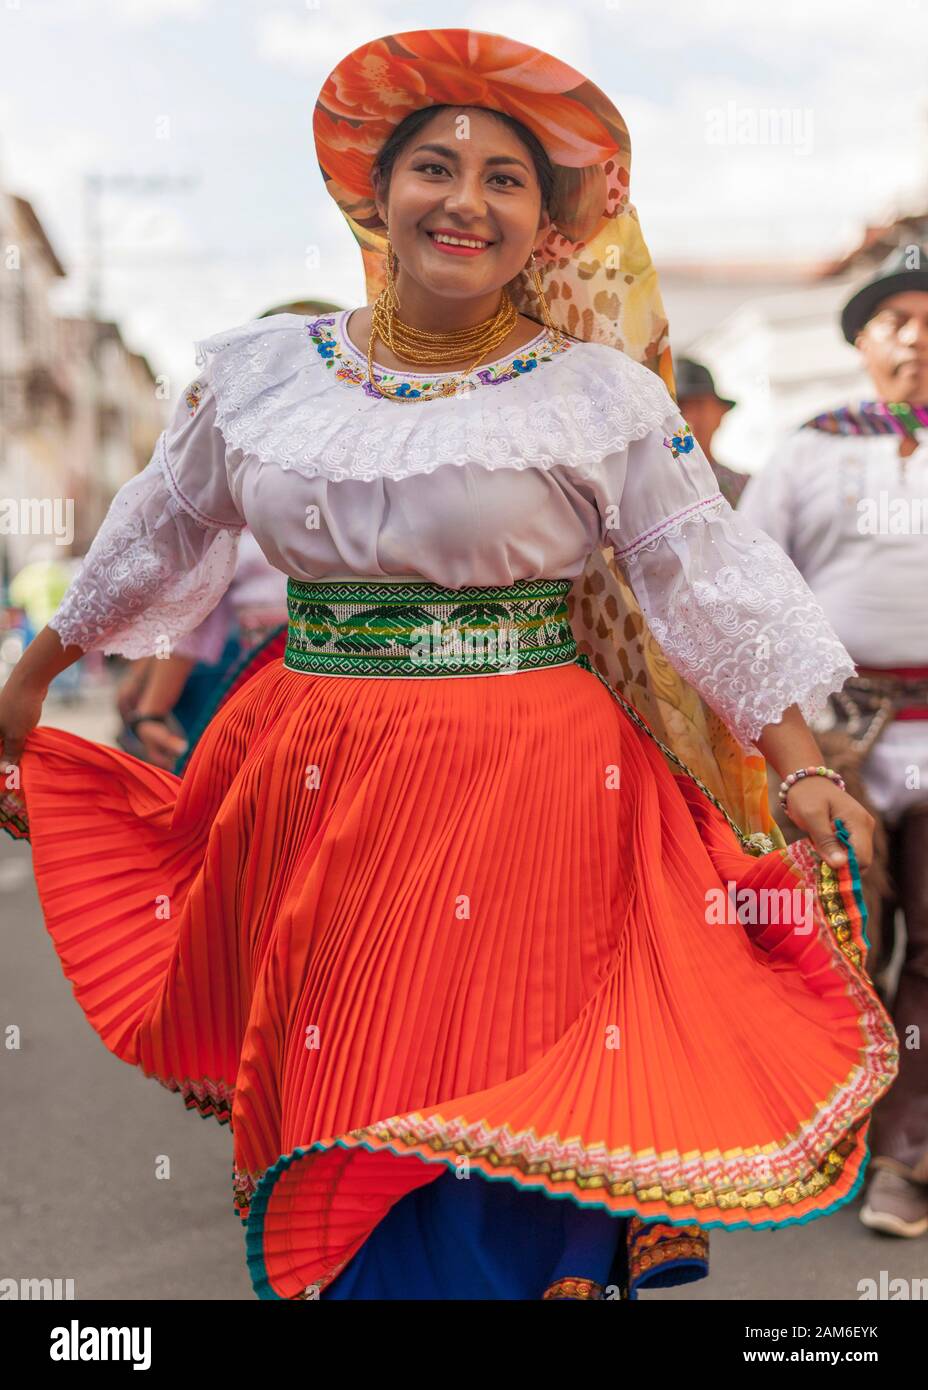 Participant in a new year street festival in Riobamba, Ecuador. Stock Photo